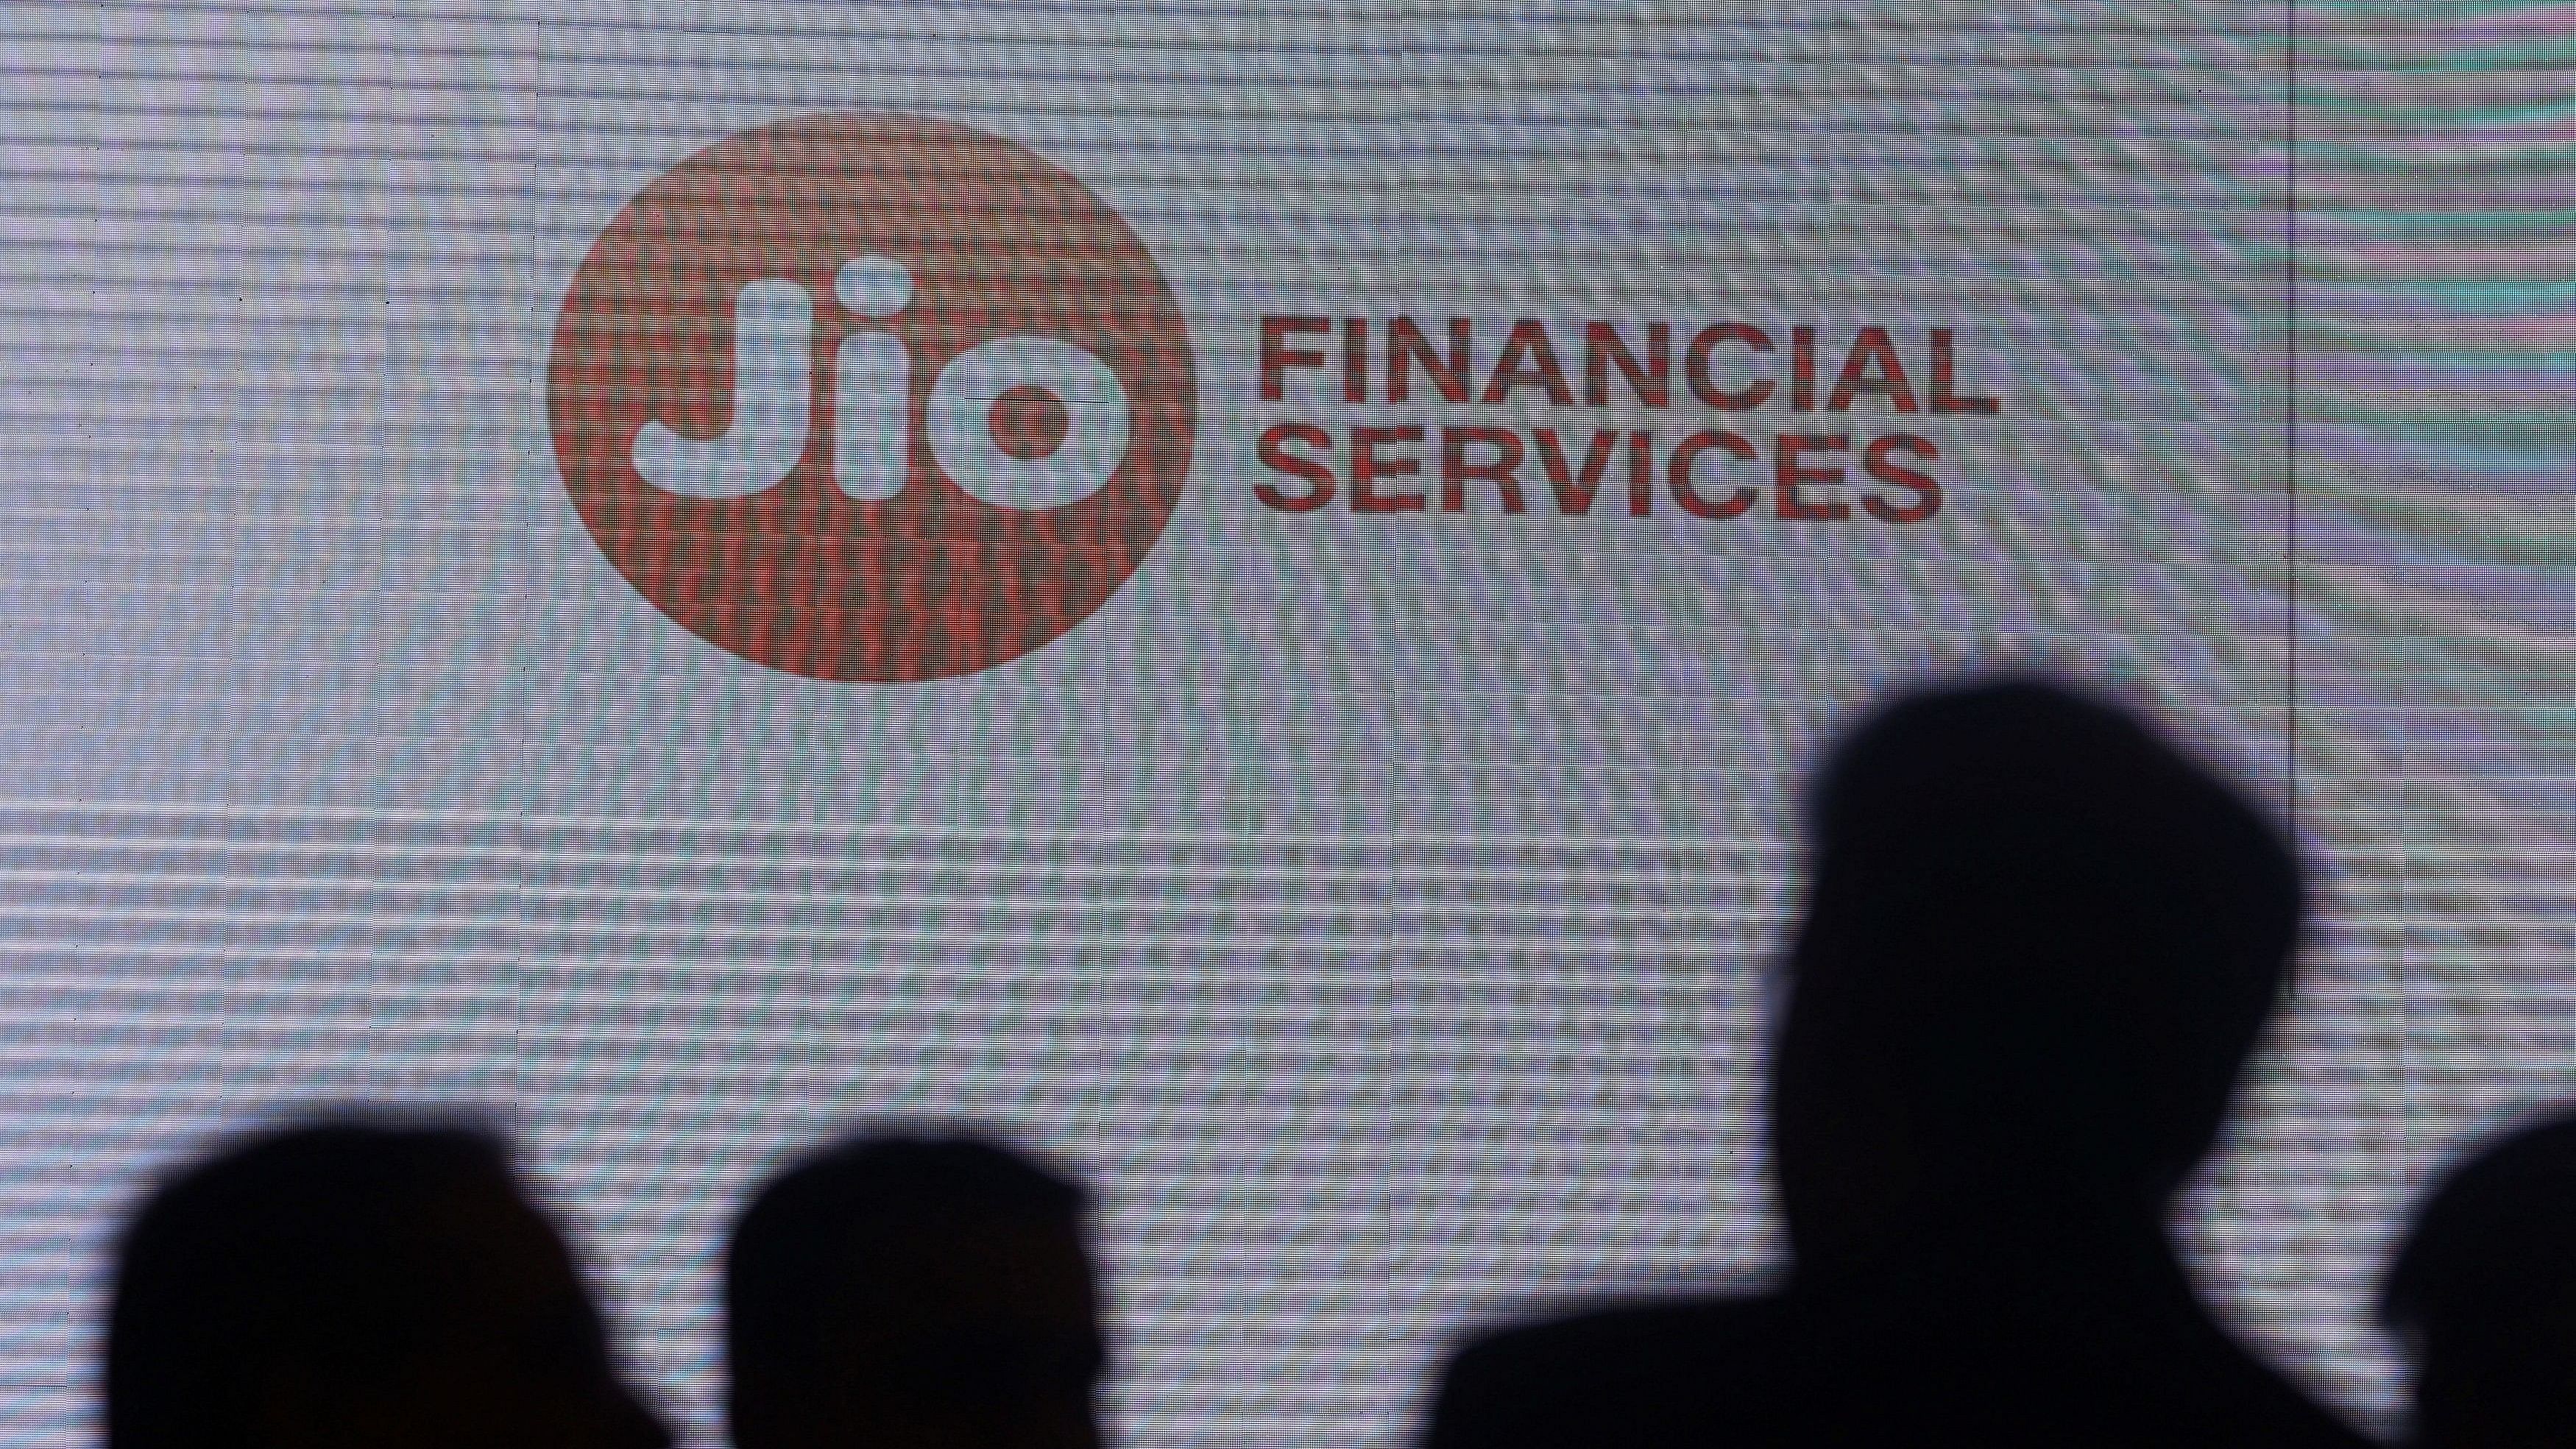 <div class="paragraphs"><p>Logo of Jio Financial Services.</p></div>